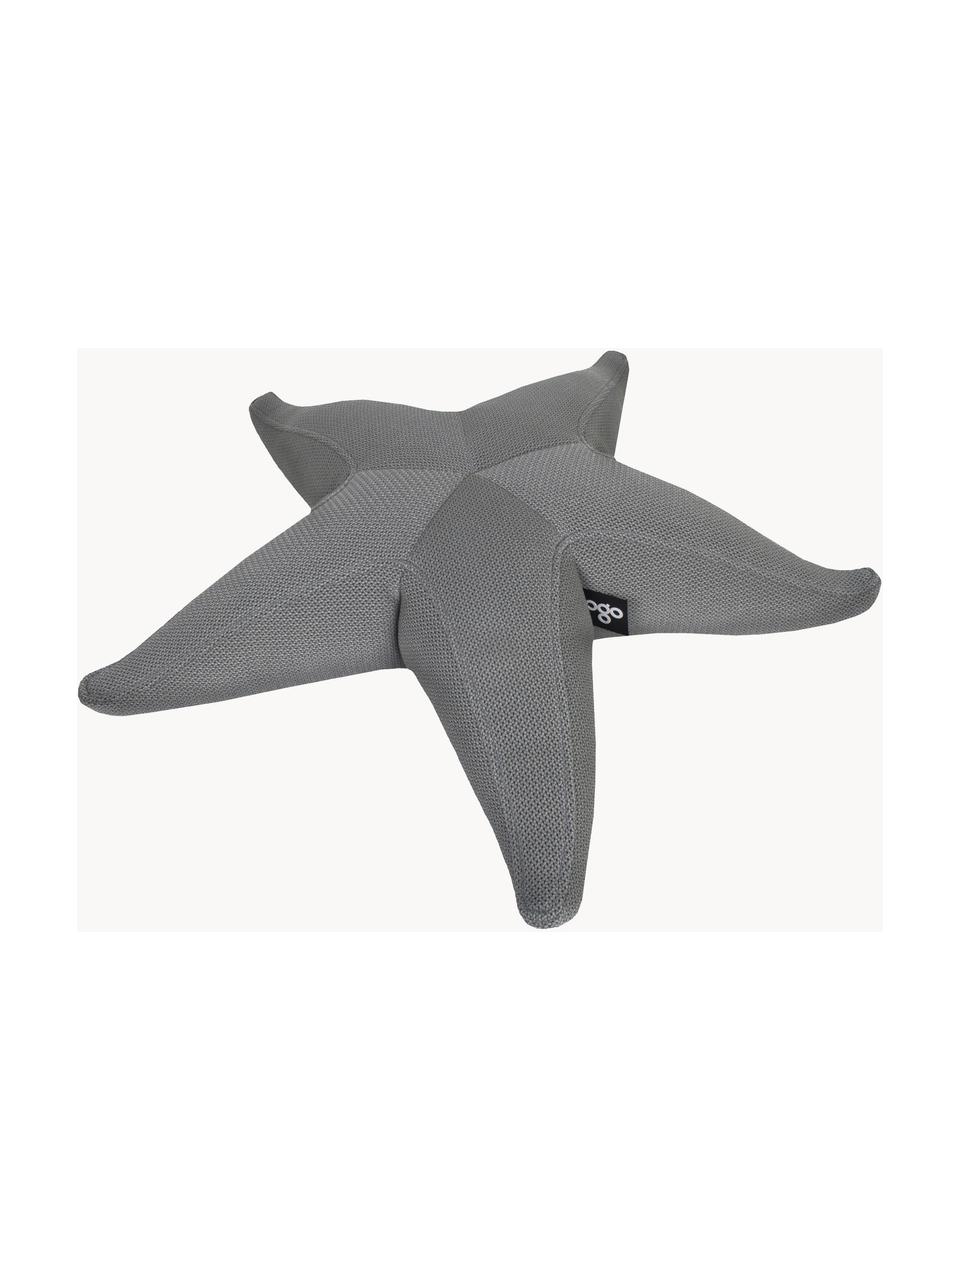 Ręcznie wykonany zewnętrzny worek do siedzenia Starfish, Tapicerka: 70% PAN + 30% PES, wodood, Ciemny szary, S 83 x L 83 cm